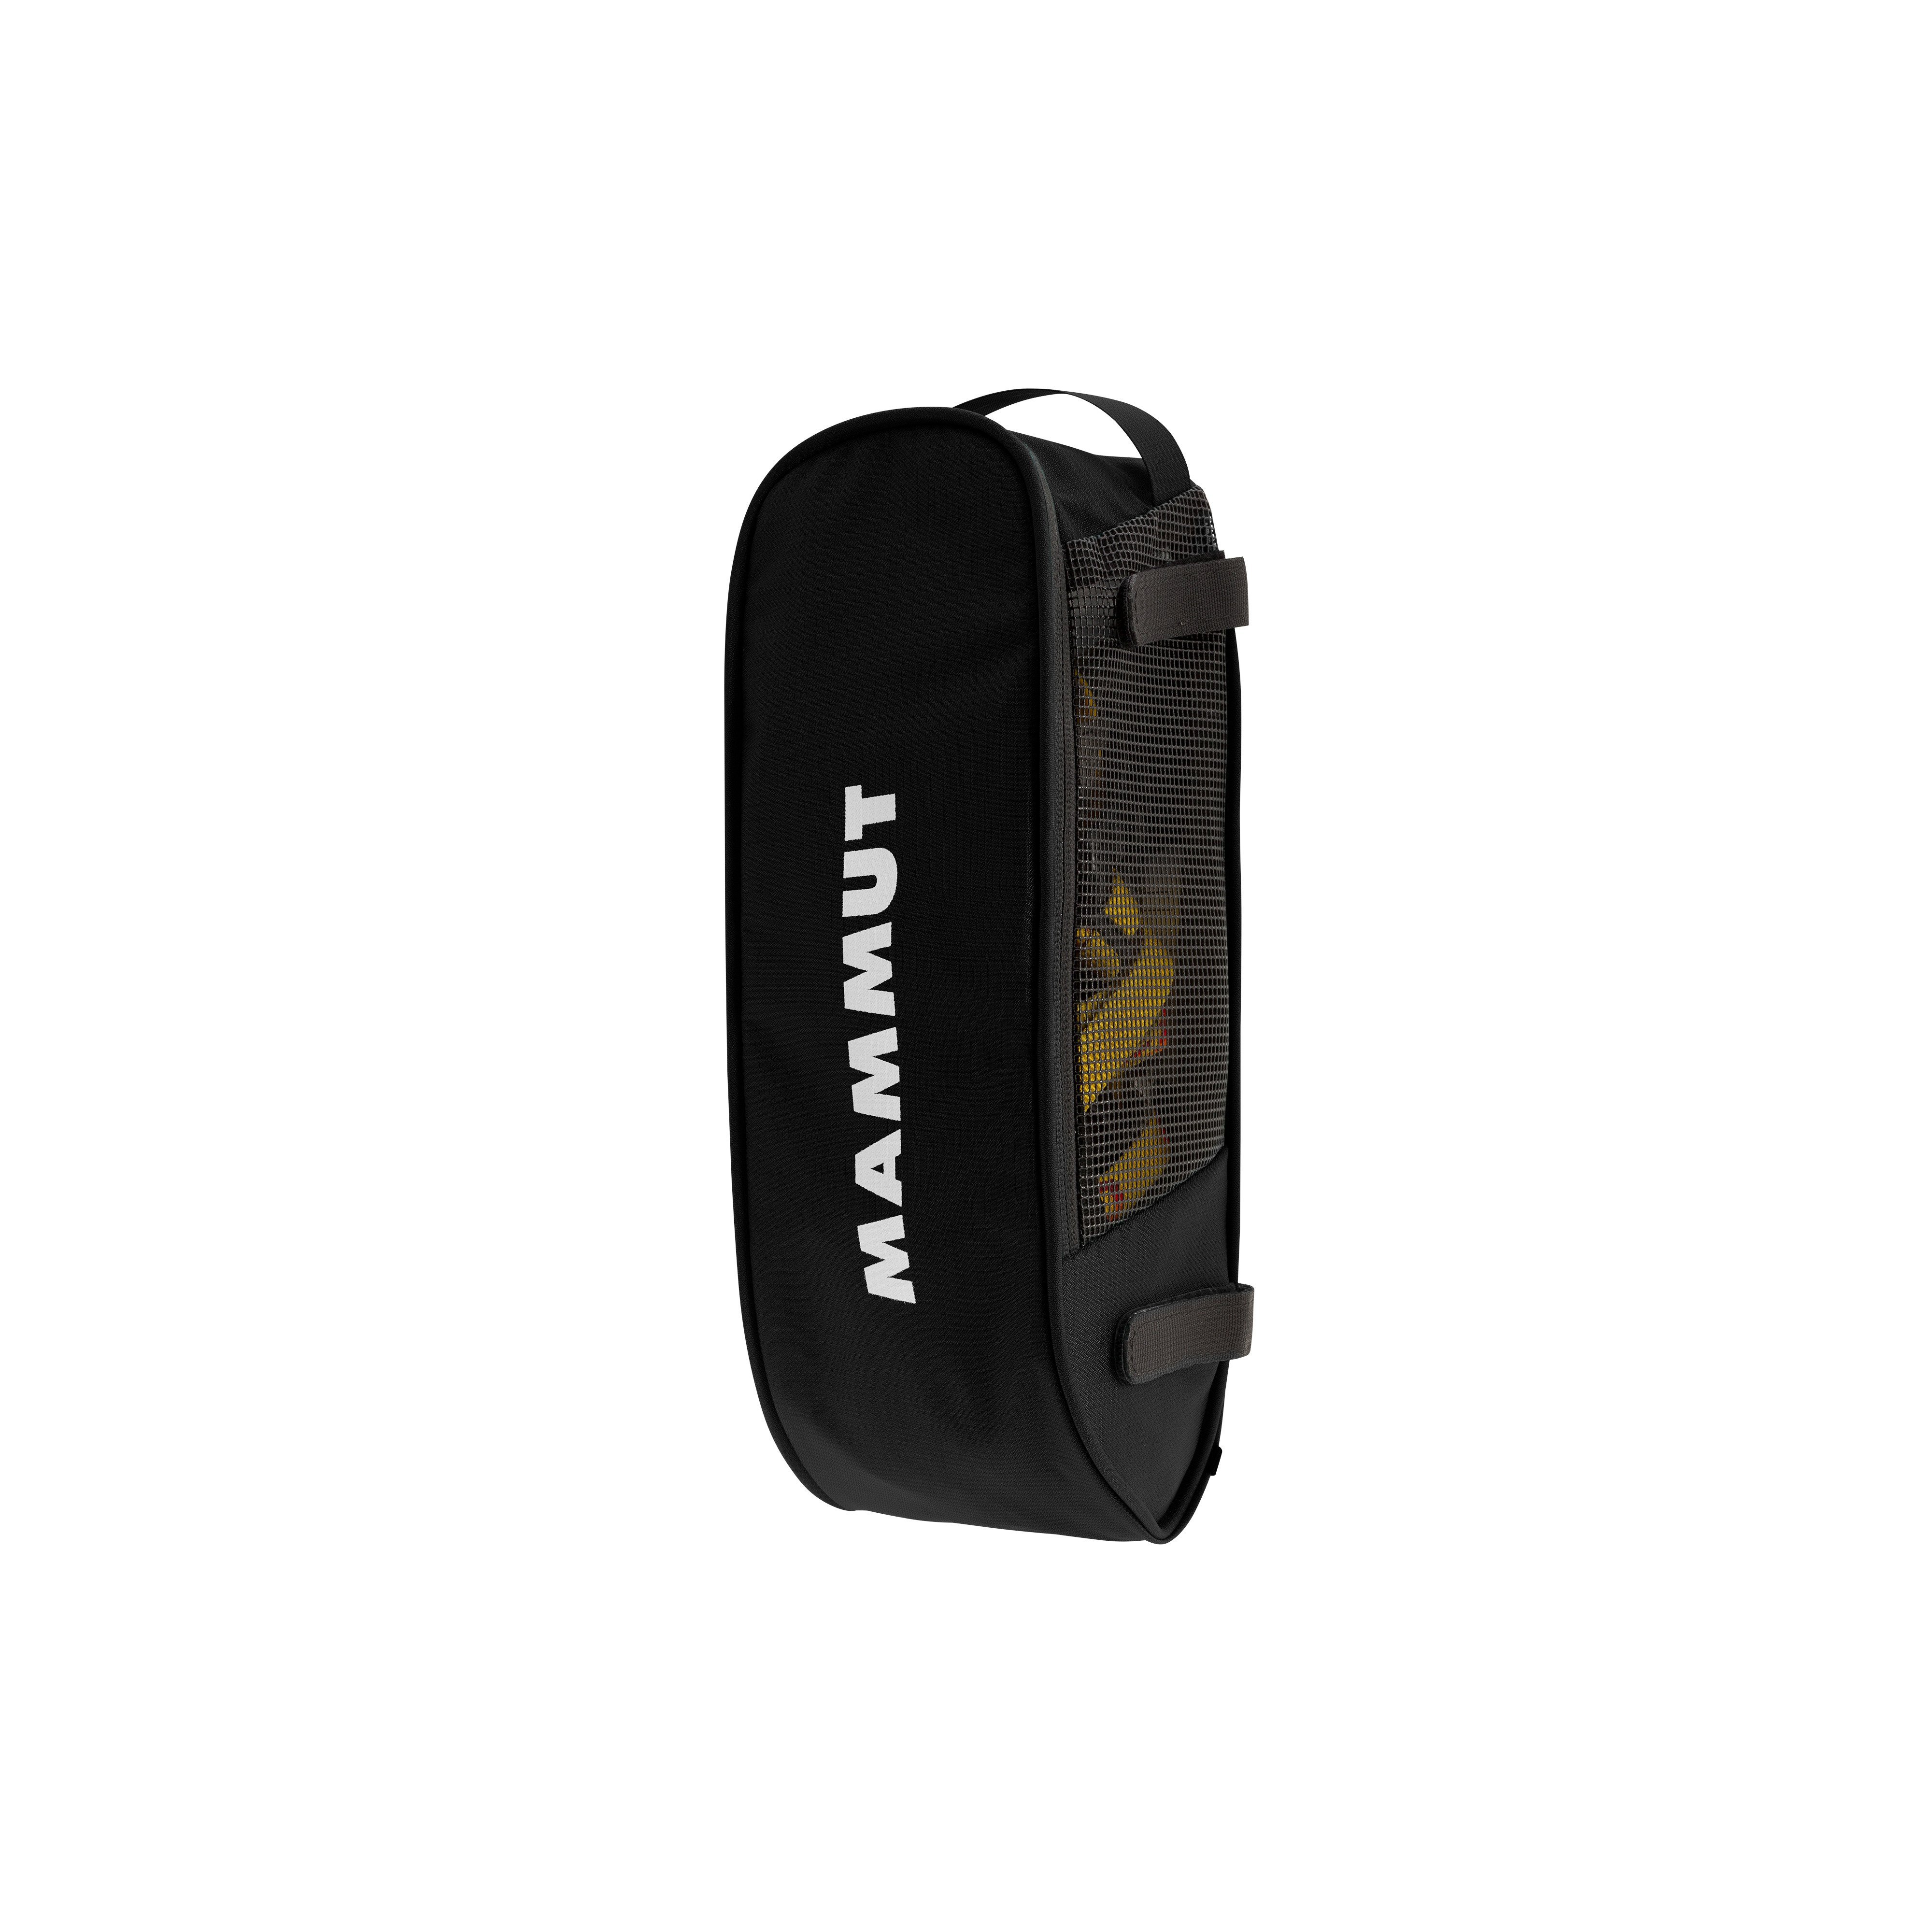 Crampon Pocket - black, one size product image